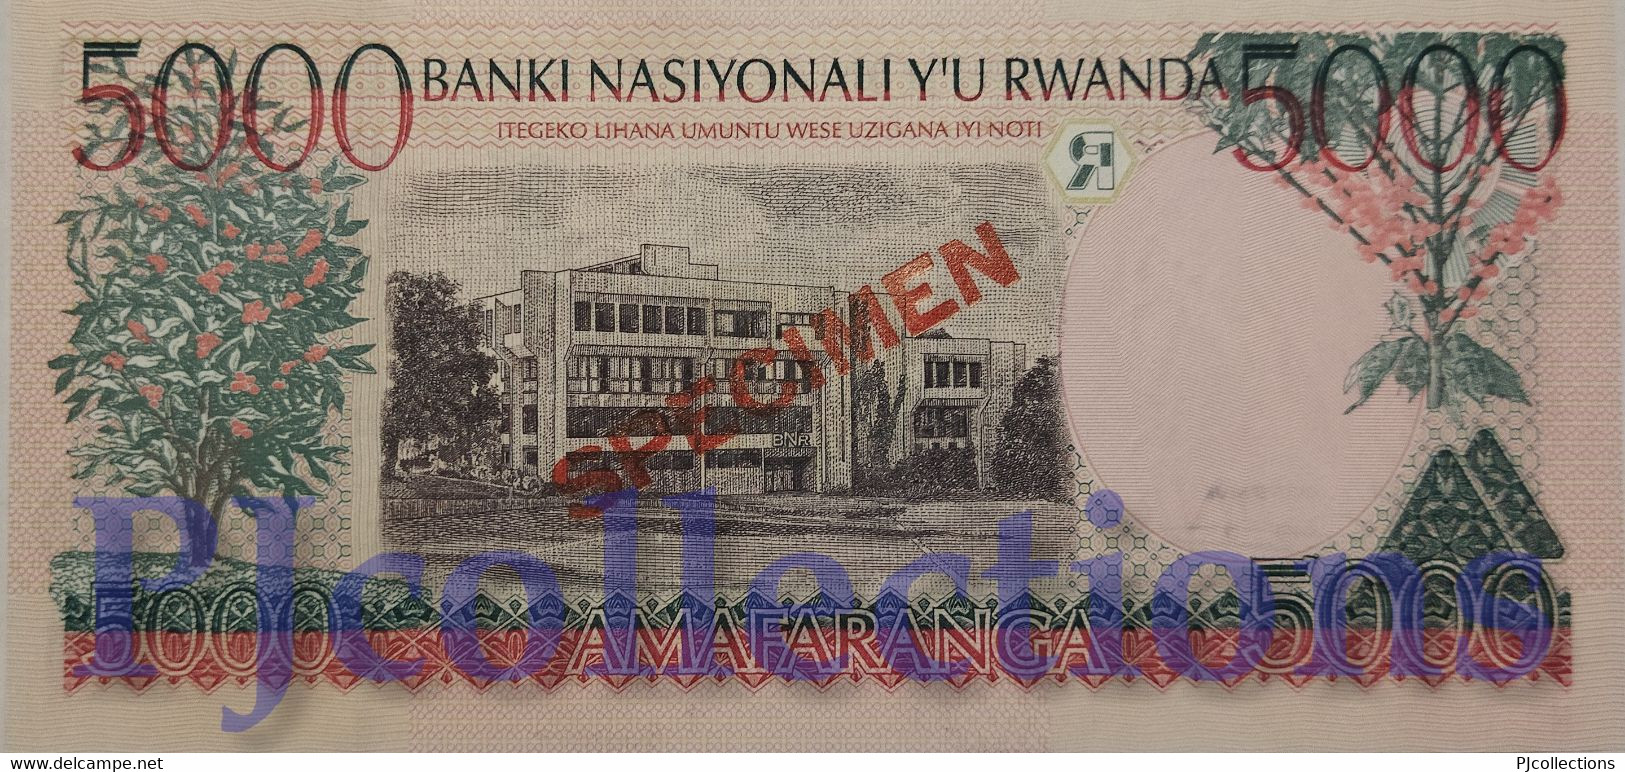 RWANDA 5000 FRANCS 1998 PICK 28s SPECIMEN UNC - Rwanda